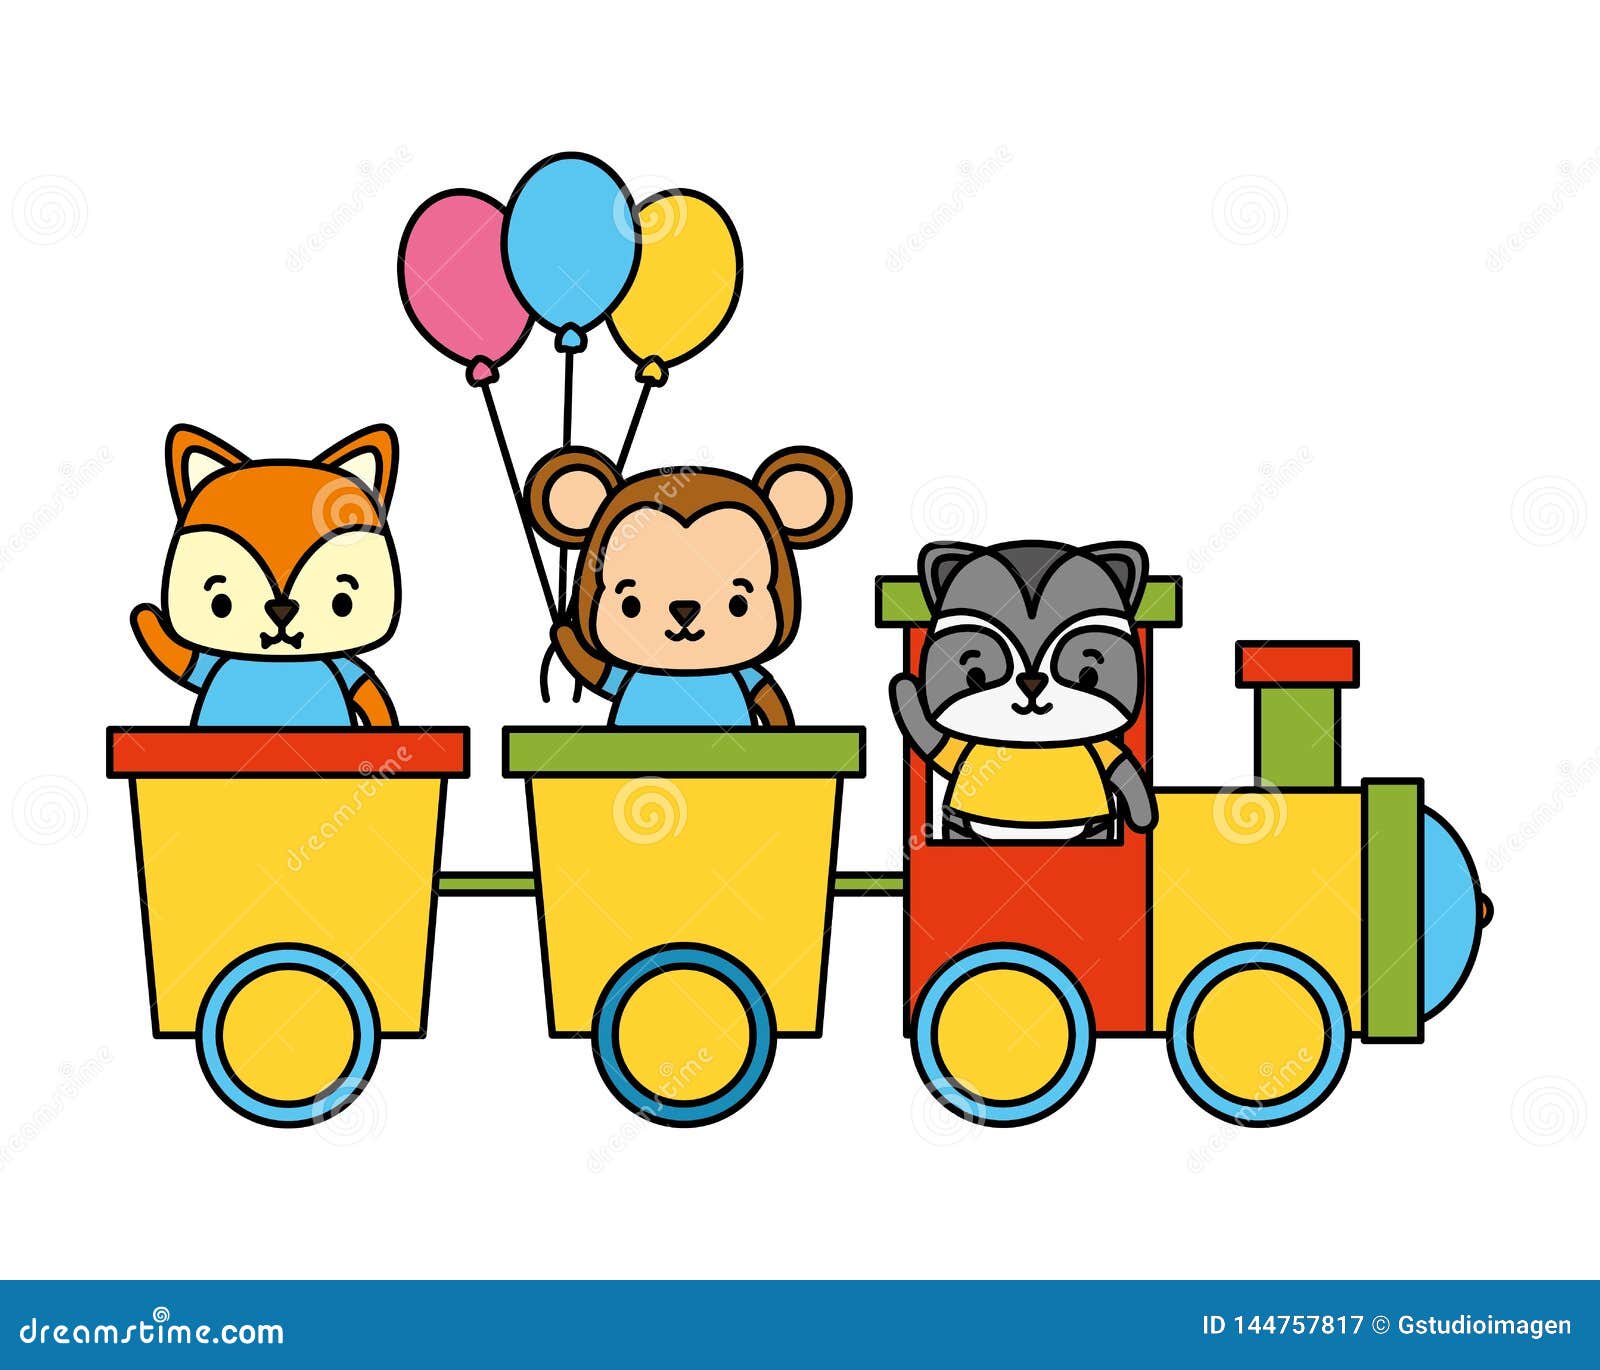 卡通火车和小动物插画矢量素材图片素材-编号25578963-图行天下